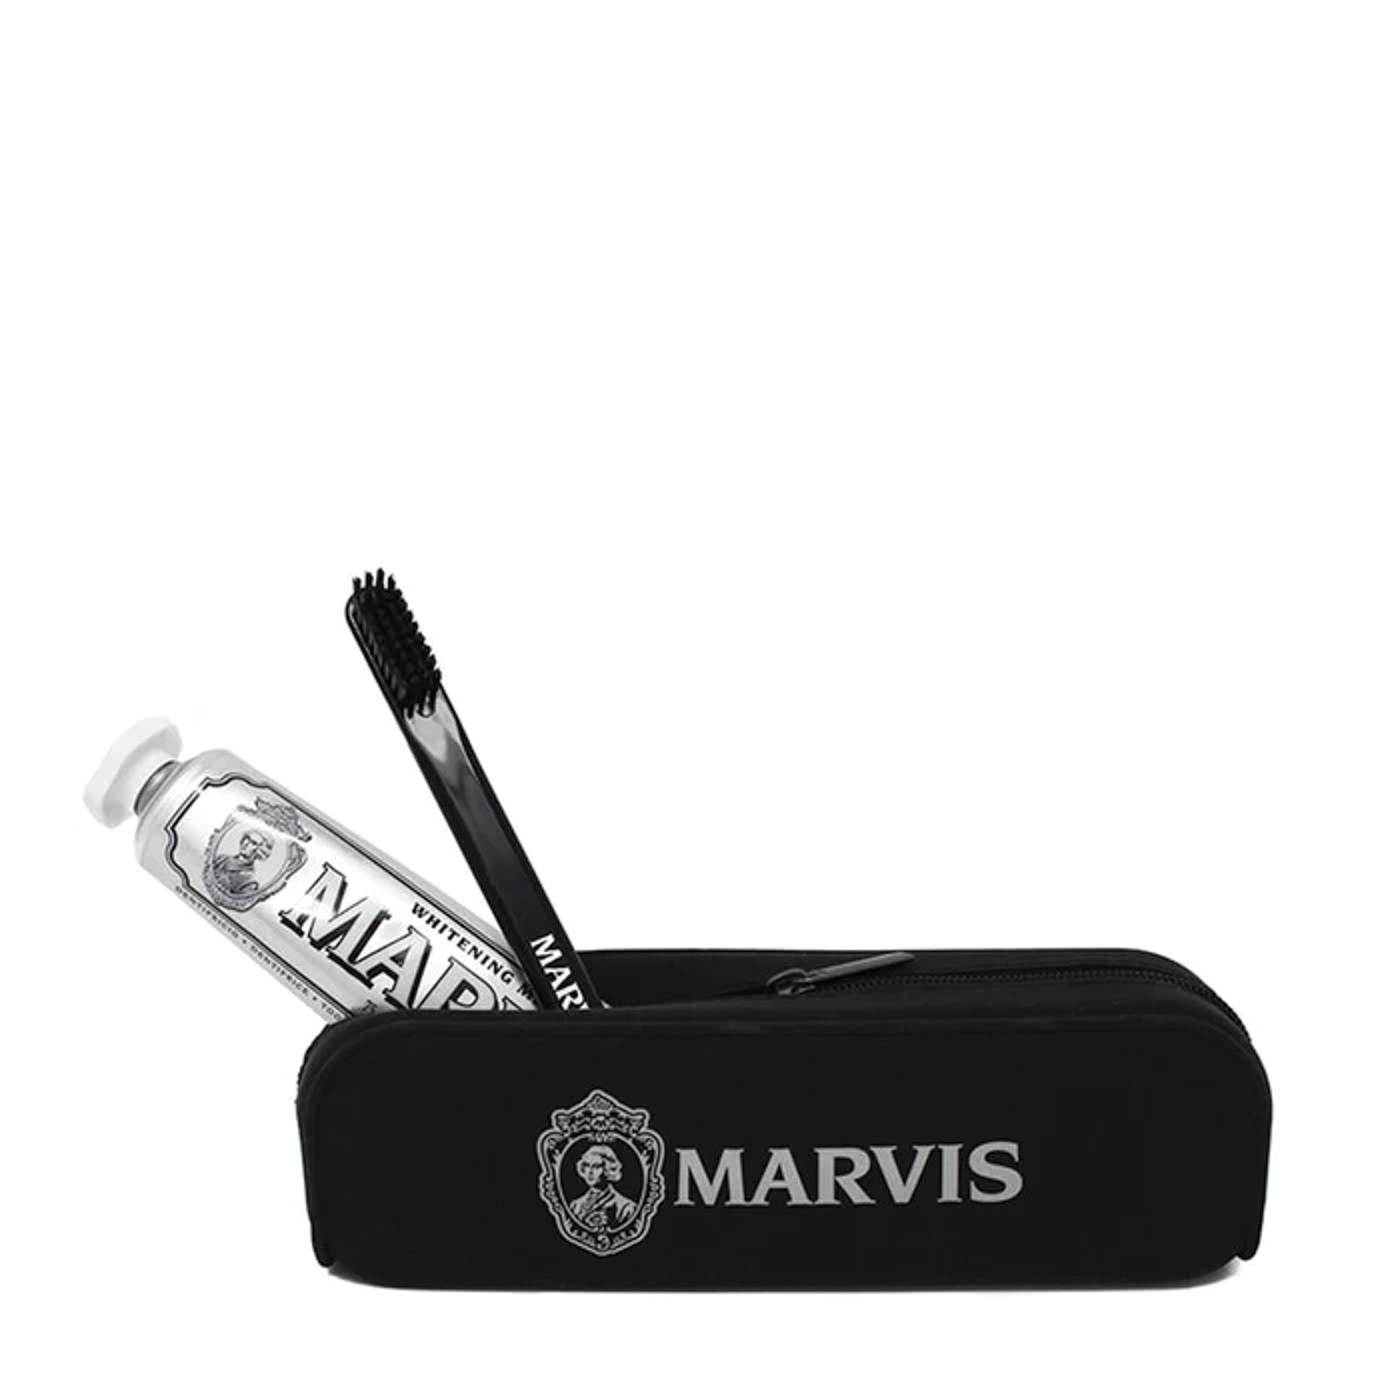 38 Marvis Toiletries & Toothpaste Kit $25 Mozzafiato.com